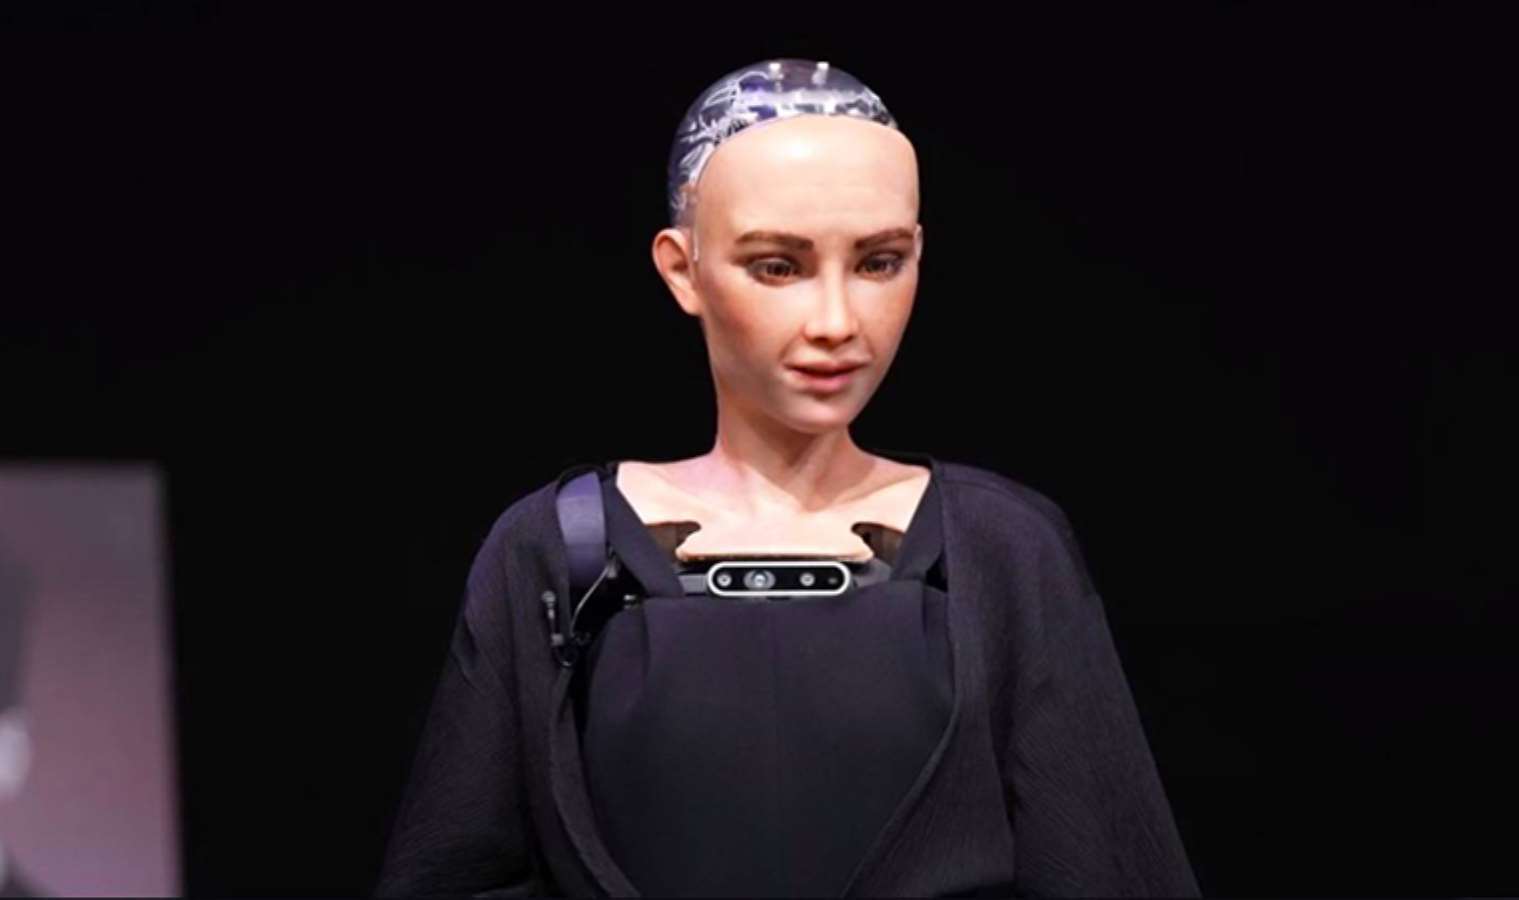 Robot Sophia: Siz insanlar biraz zavallısınız